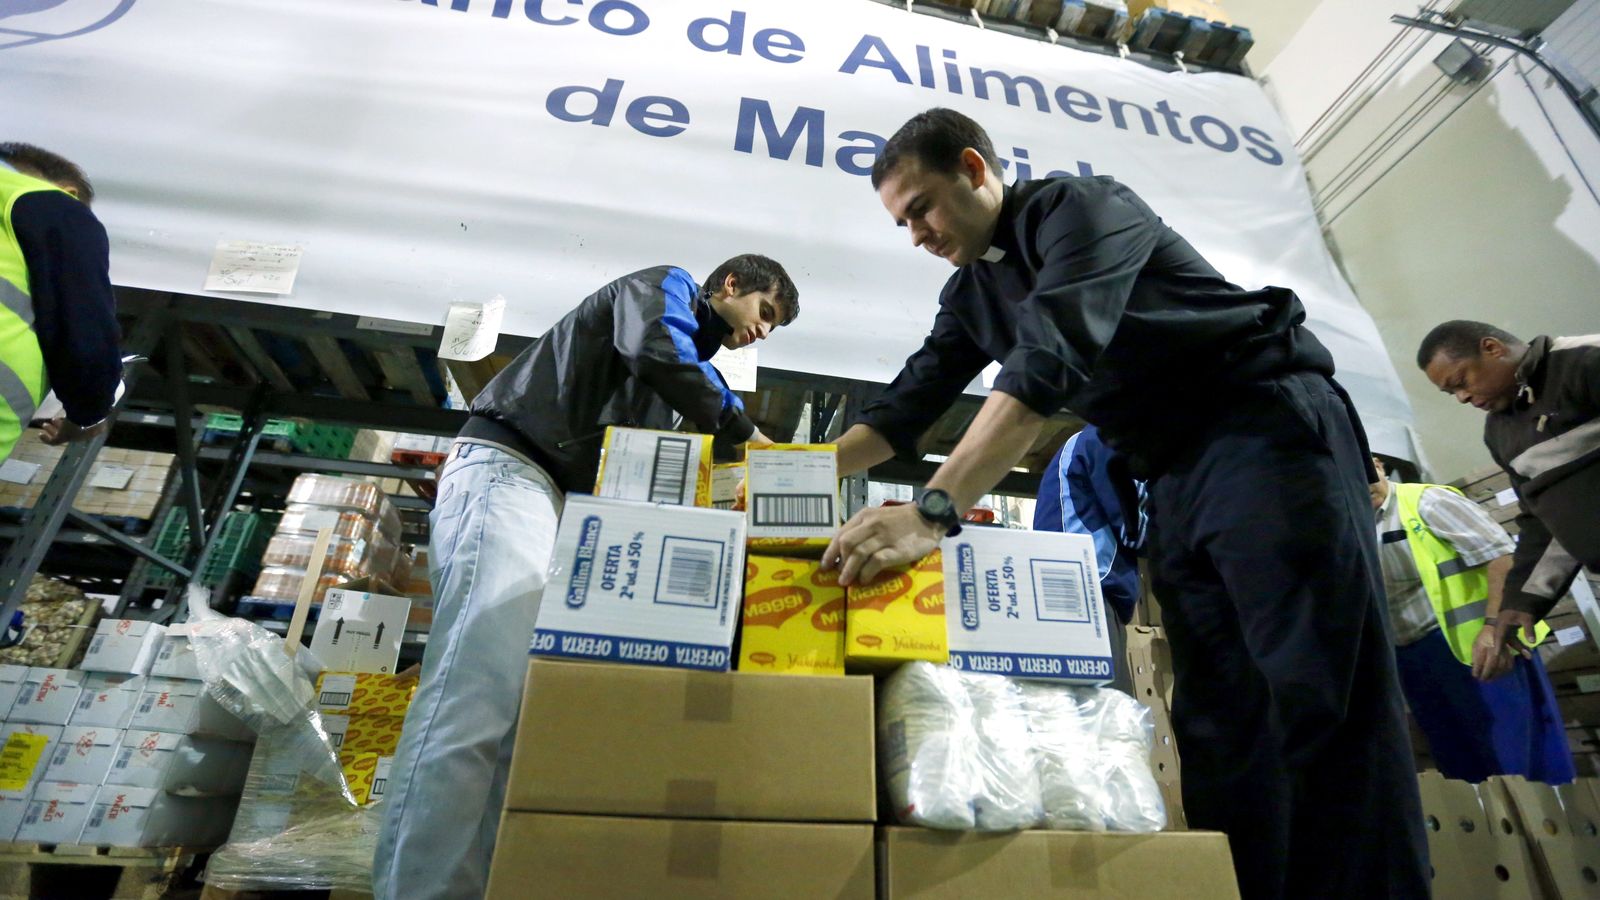 Foto: Un sacerdote acompañado de varios voluntarios trabaja en la fundación Banco de Alimentos de Madrid. (Efe)